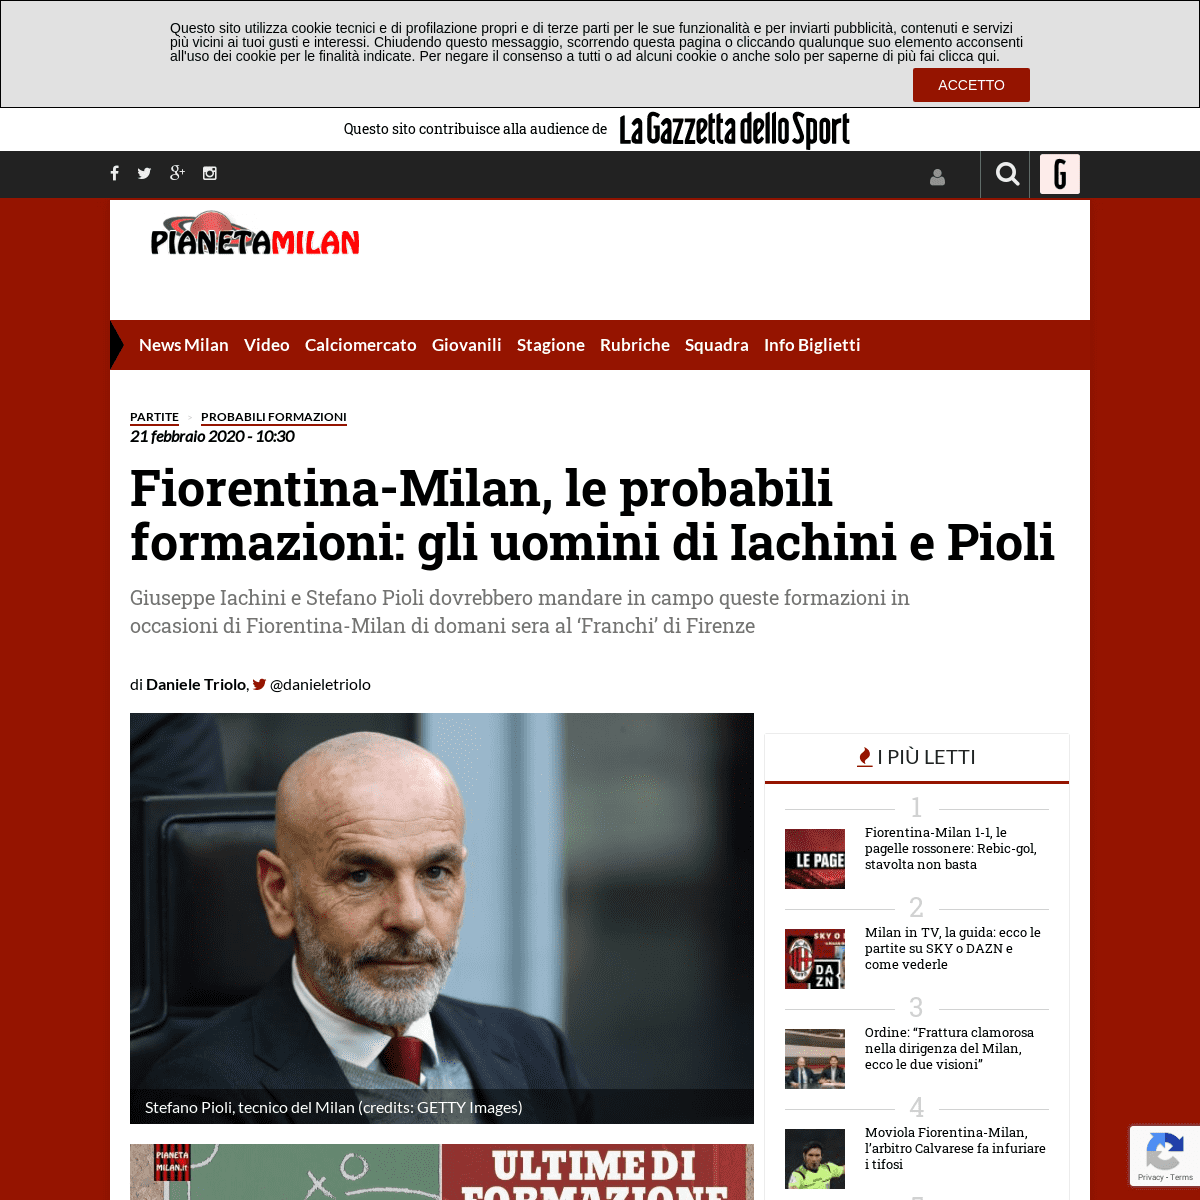 A complete backup of www.pianetamilan.it/partite/probabili-formazioni/fiorentina-milan-le-probabili-formazioni-gli-uomini-di-iac